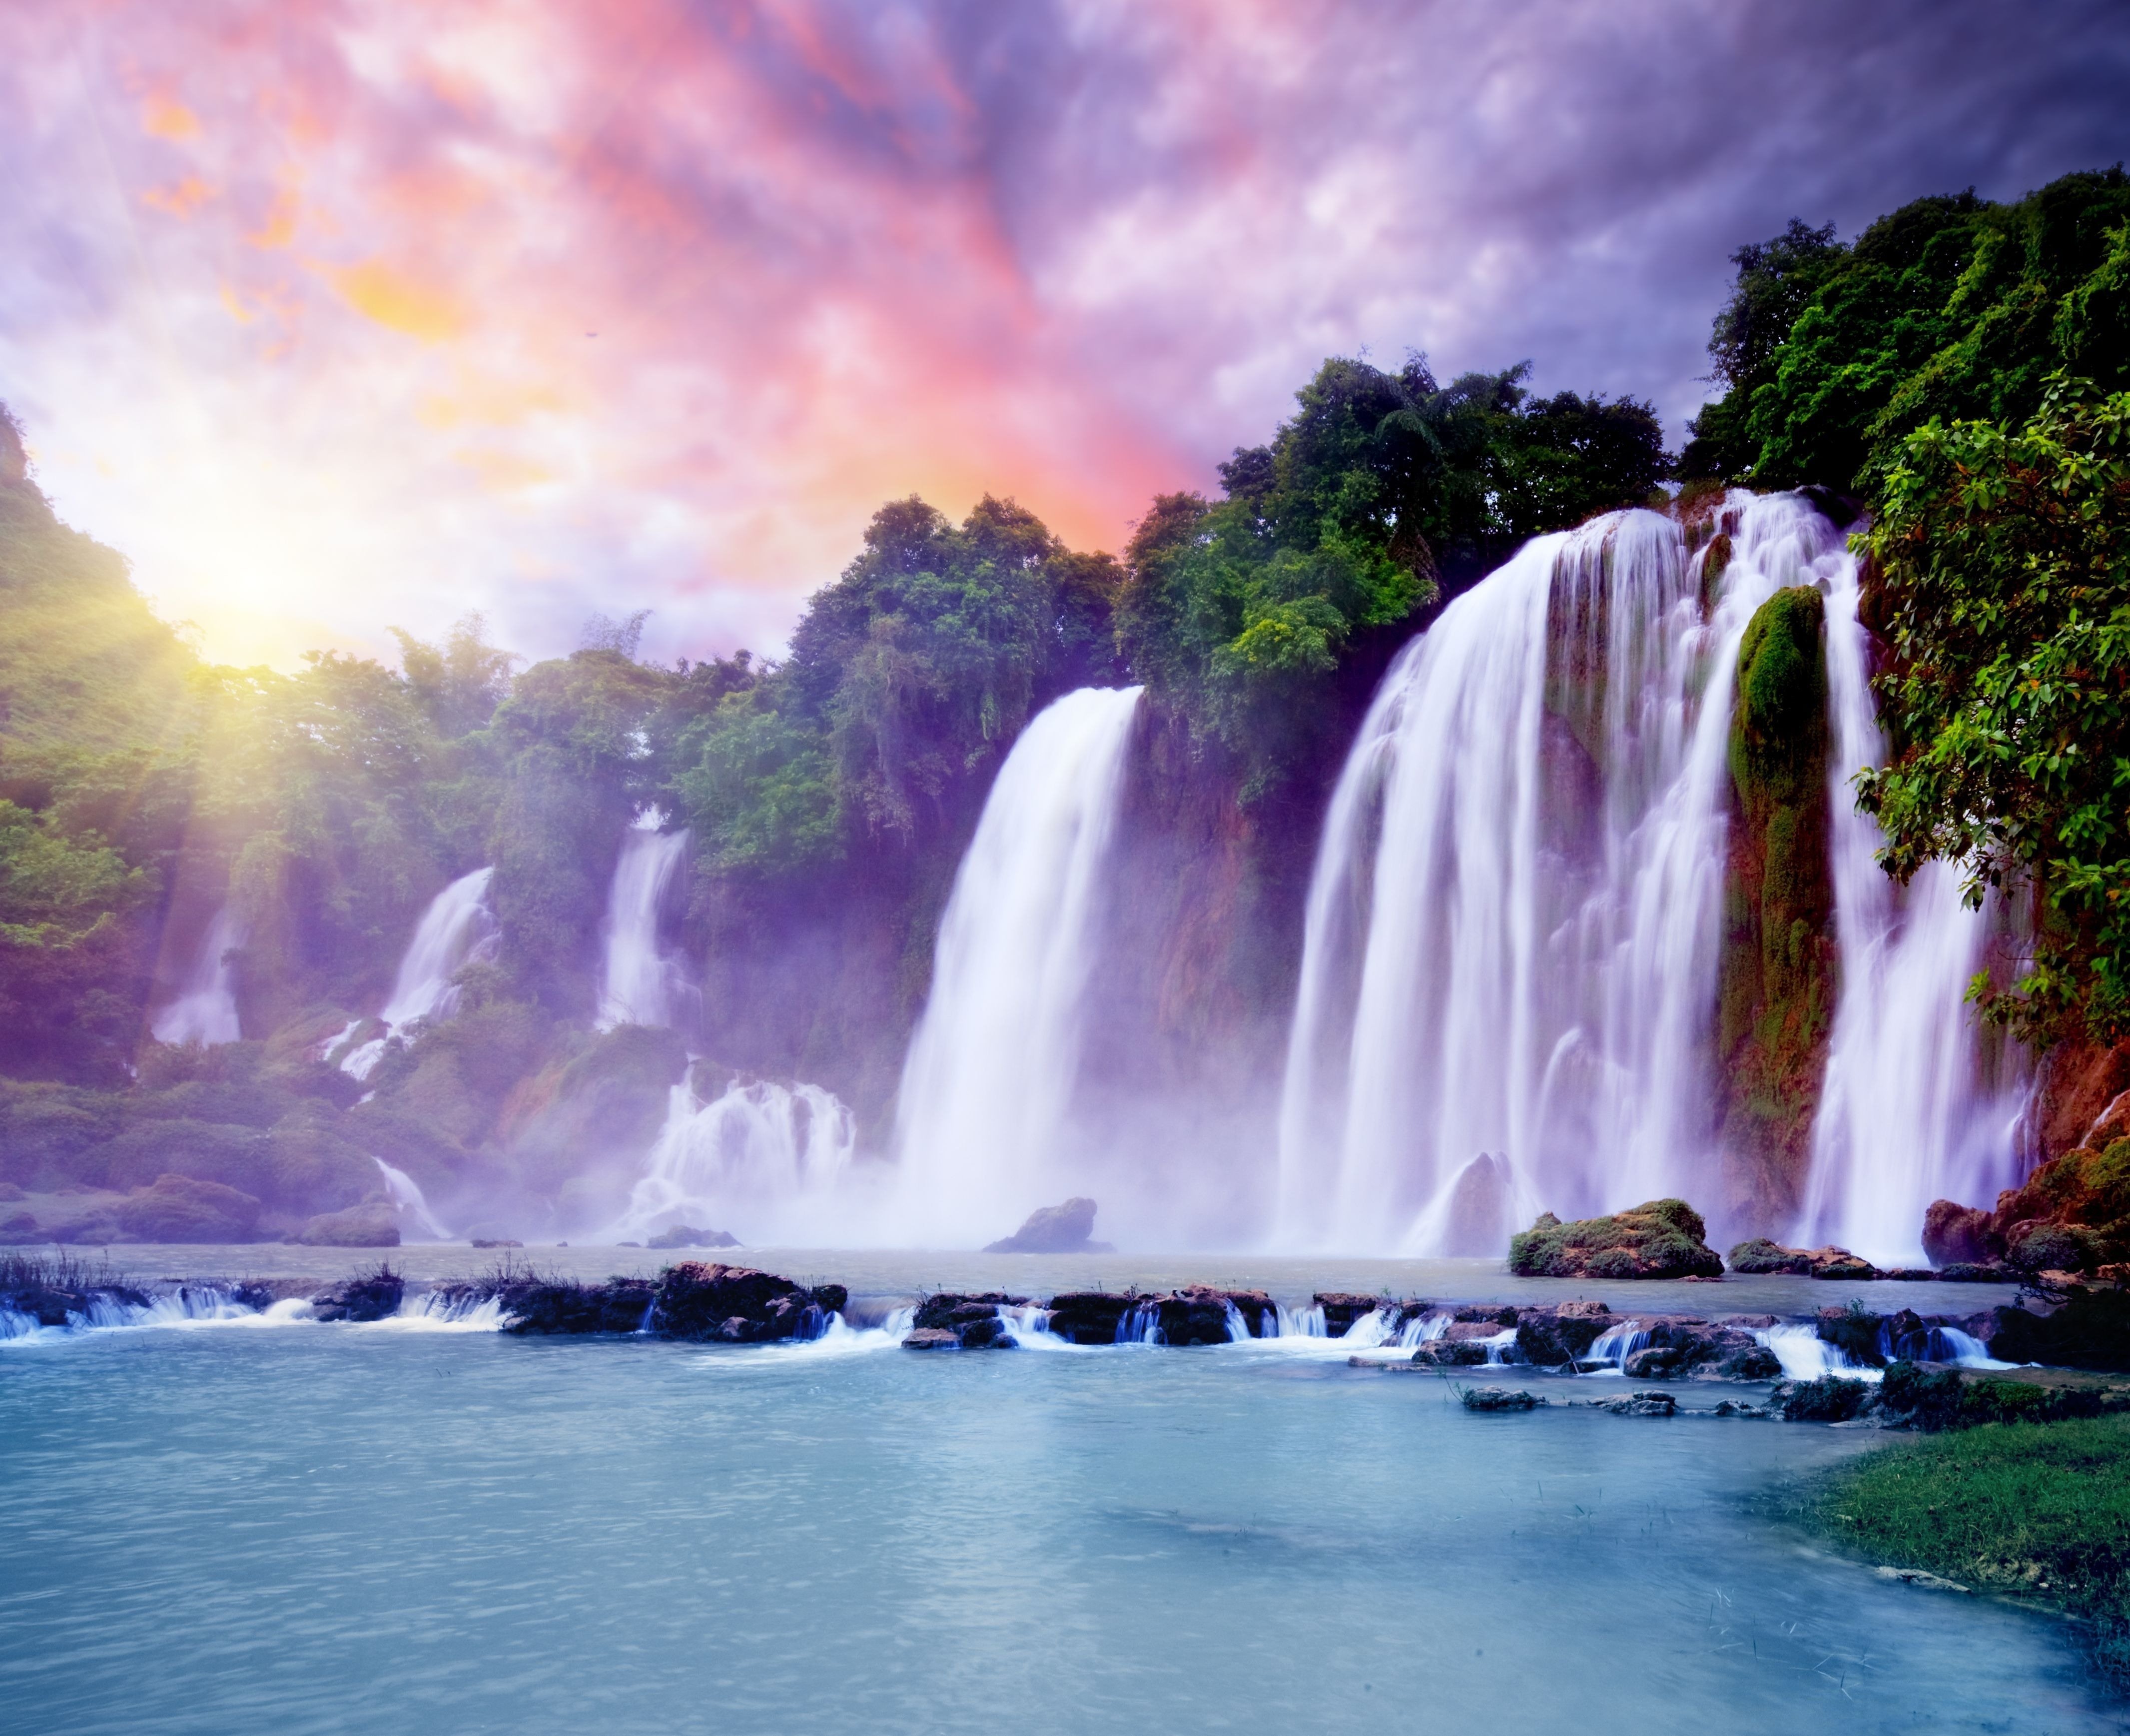 Картинки. Air Terjun водопад. Вриндаван водопады. Пейзаж водопад. Красивые пейзажи с водопадами.